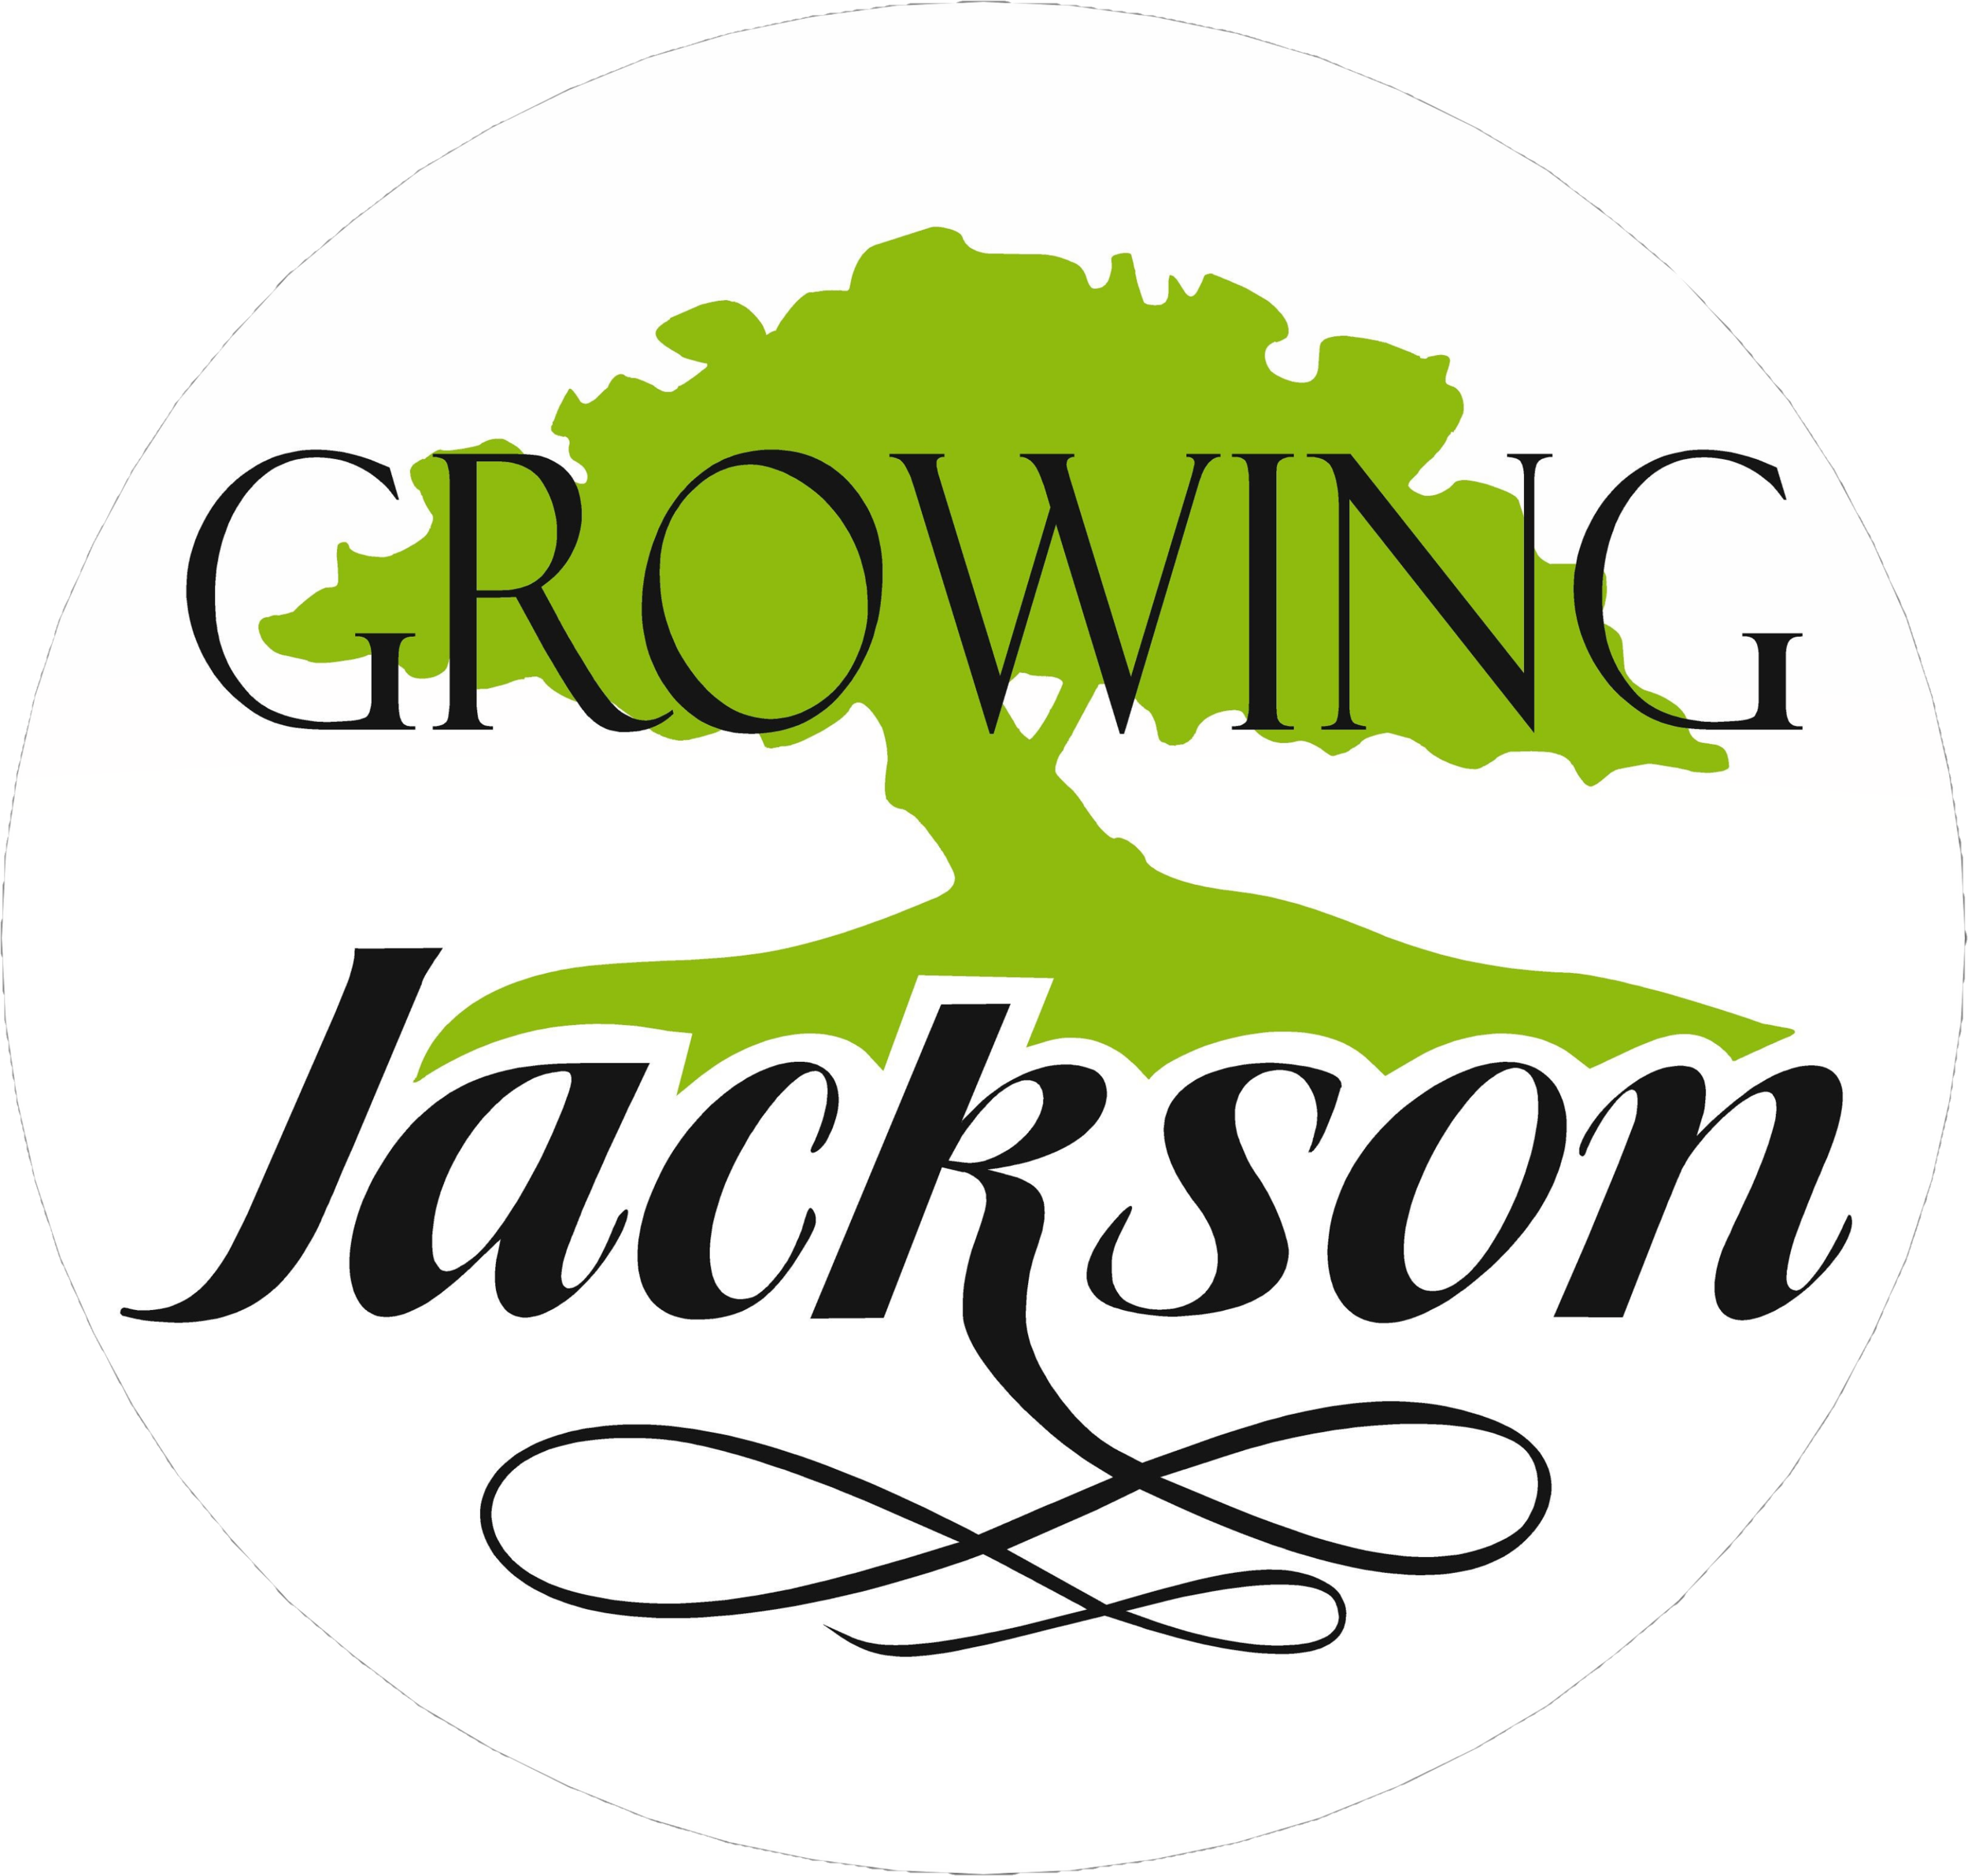 Jackson Economic Development Corp.